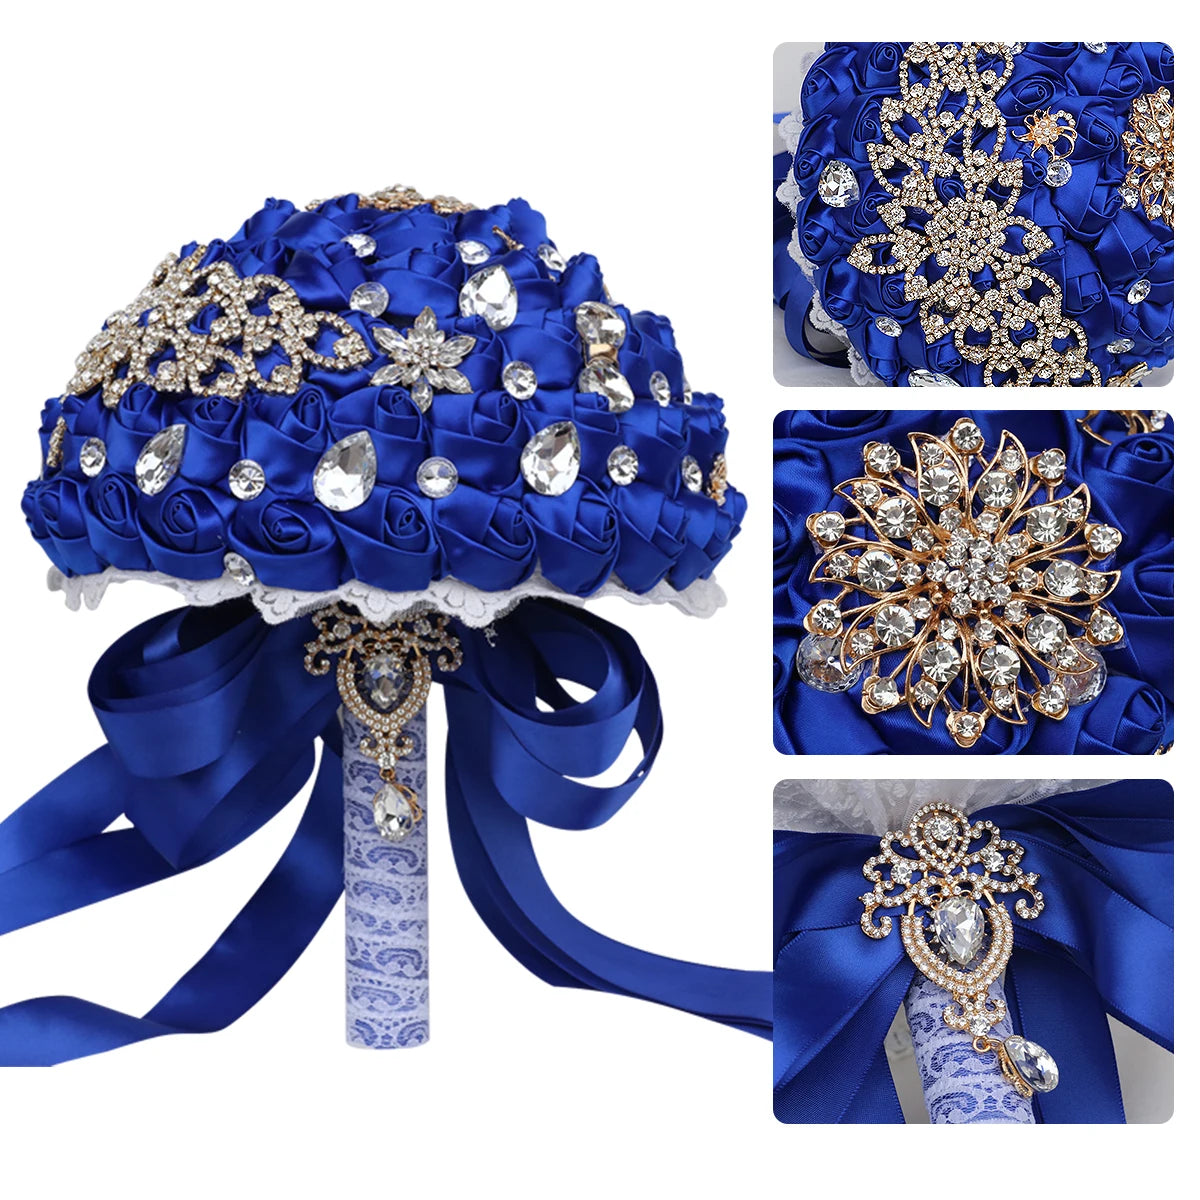 Luxury Royal Blue Bouquet